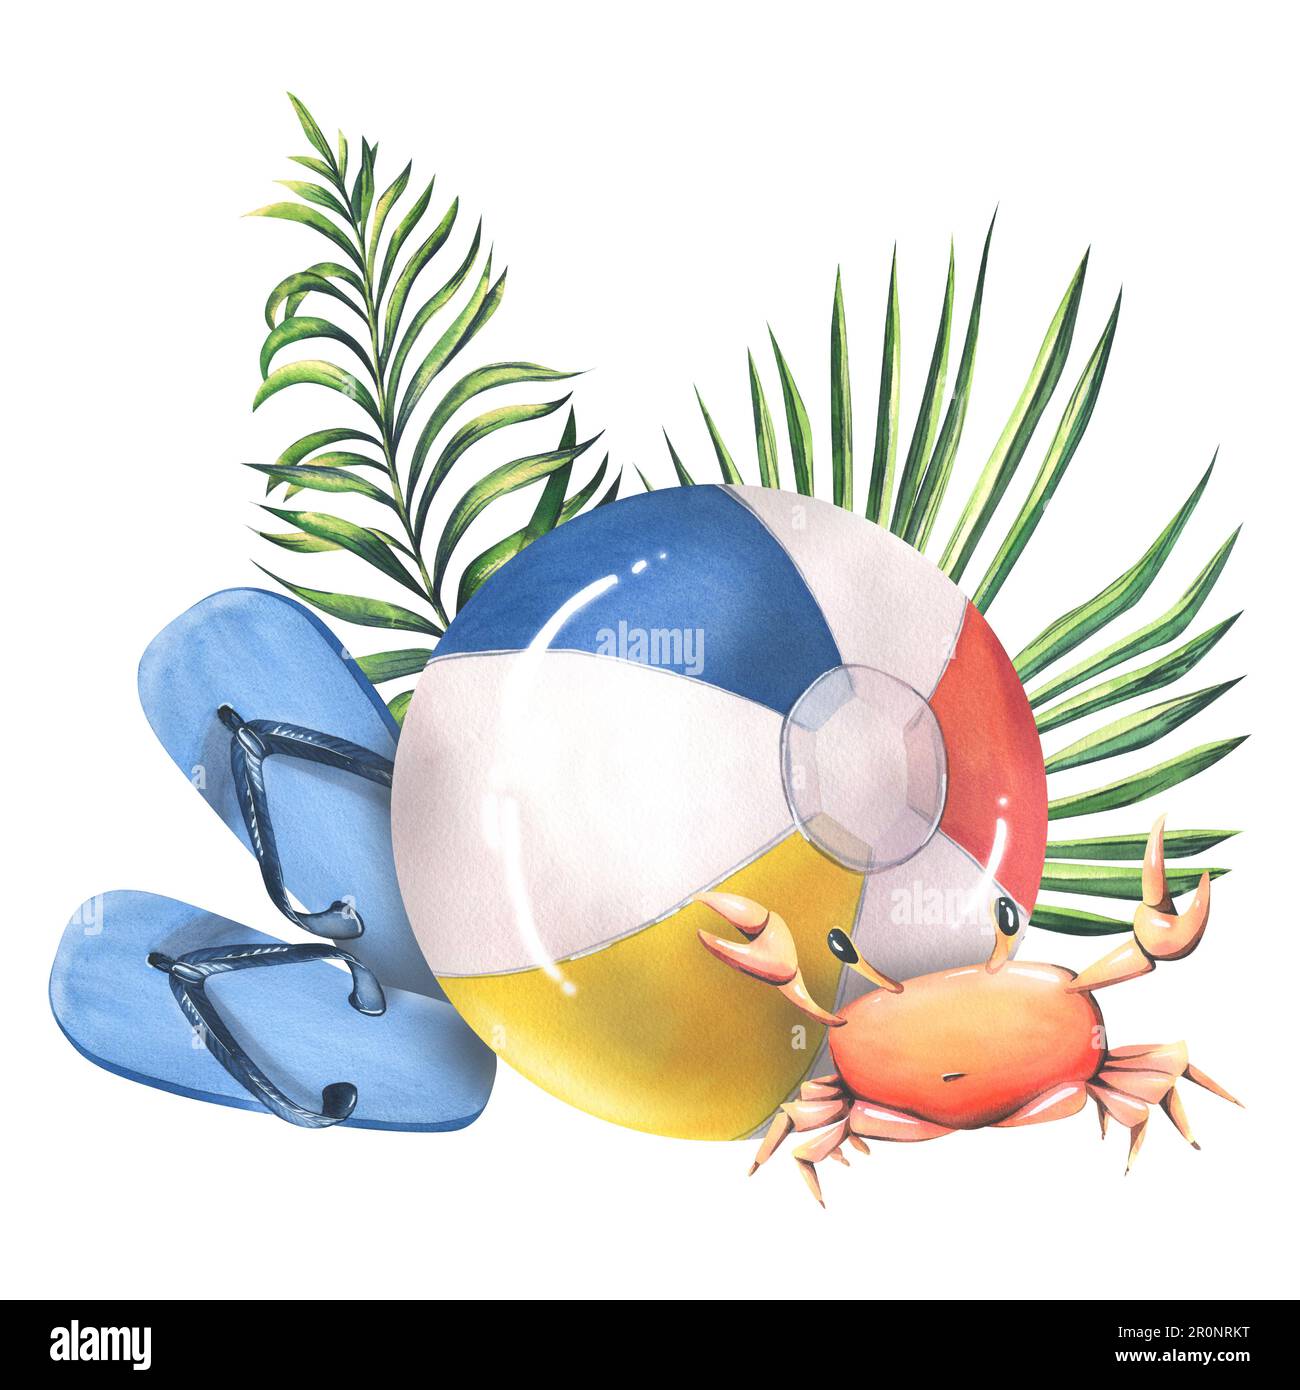 Bola de playa multicolor con cangrejo, chanclas y hojas de palma tropical.  Ilustración de acuarela, dibujado a mano. Composición aislada sobre un  blanco Fotografía de stock - Alamy